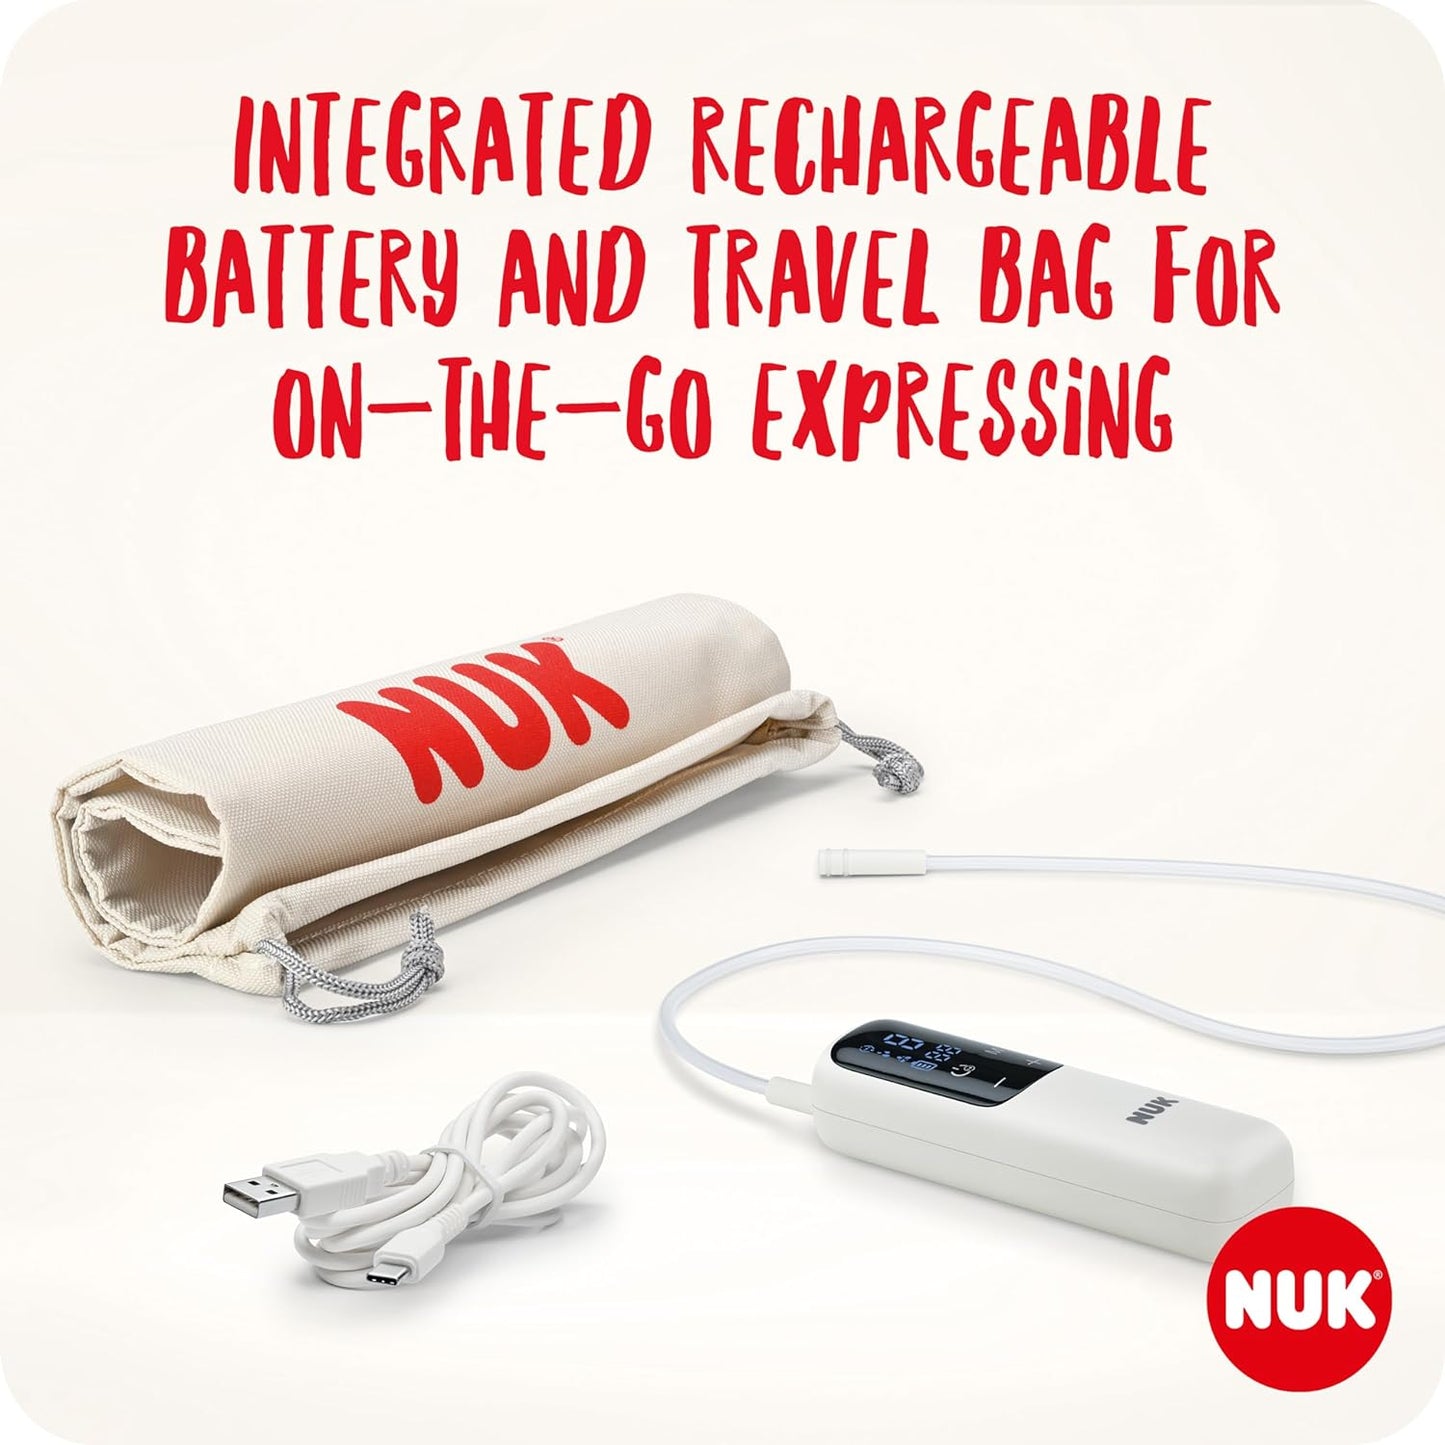 NUK  Bomba tira leite elétrica macia e fácil | Copos macios 100 por cento de silicone | Pequeno, leve, silencioso | Bateria recarregável para viagens | Copos de 24 mm e 27 mm | 1 x mamadeira de combinação ideal